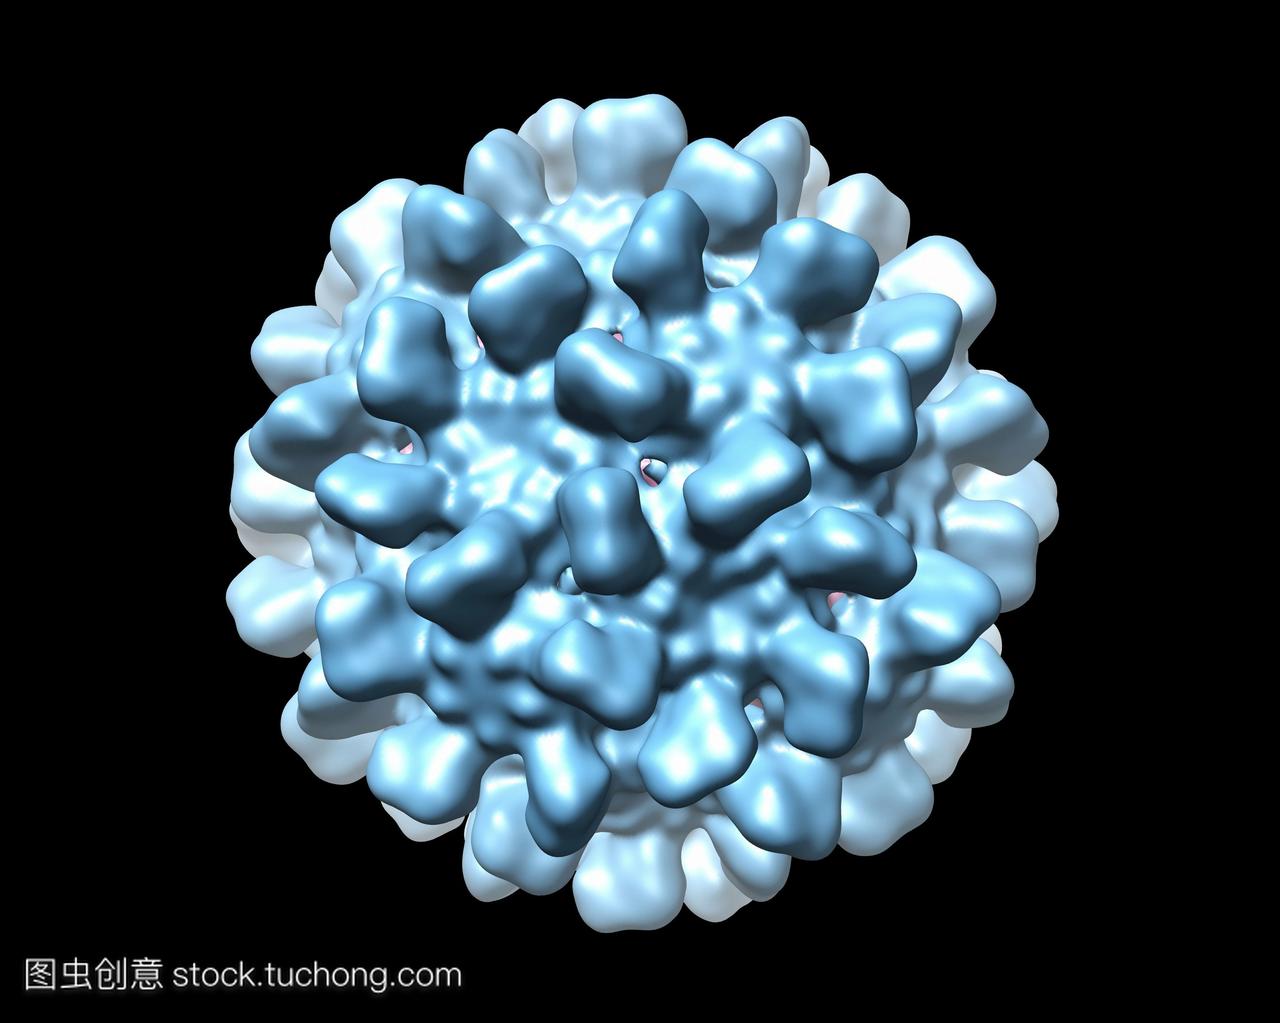 黄瓜坏死病毒cnv,计算机模型。这个图像是用分